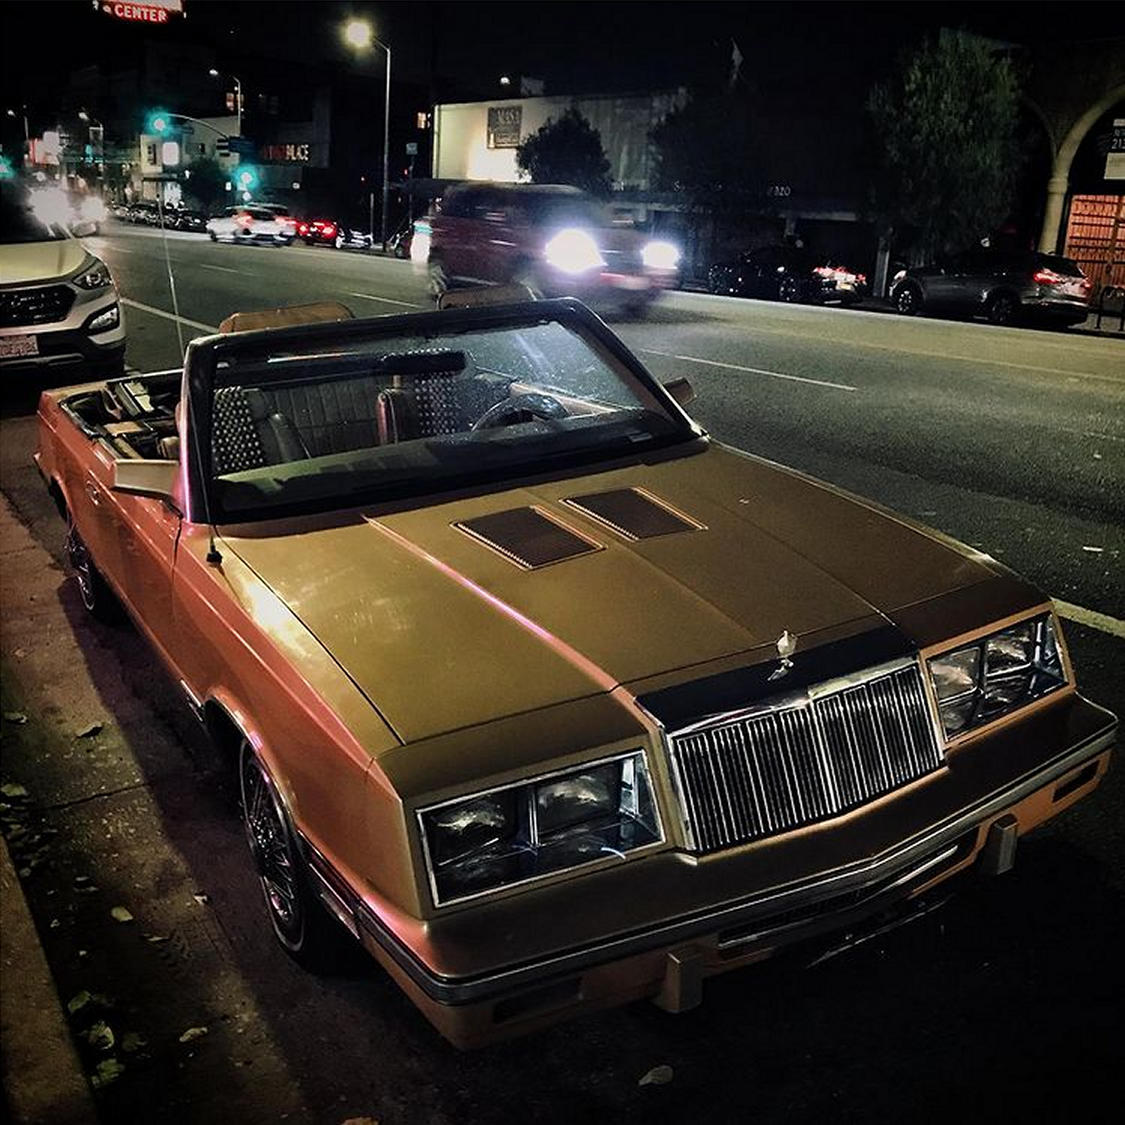 Car, Echo park, L.A.